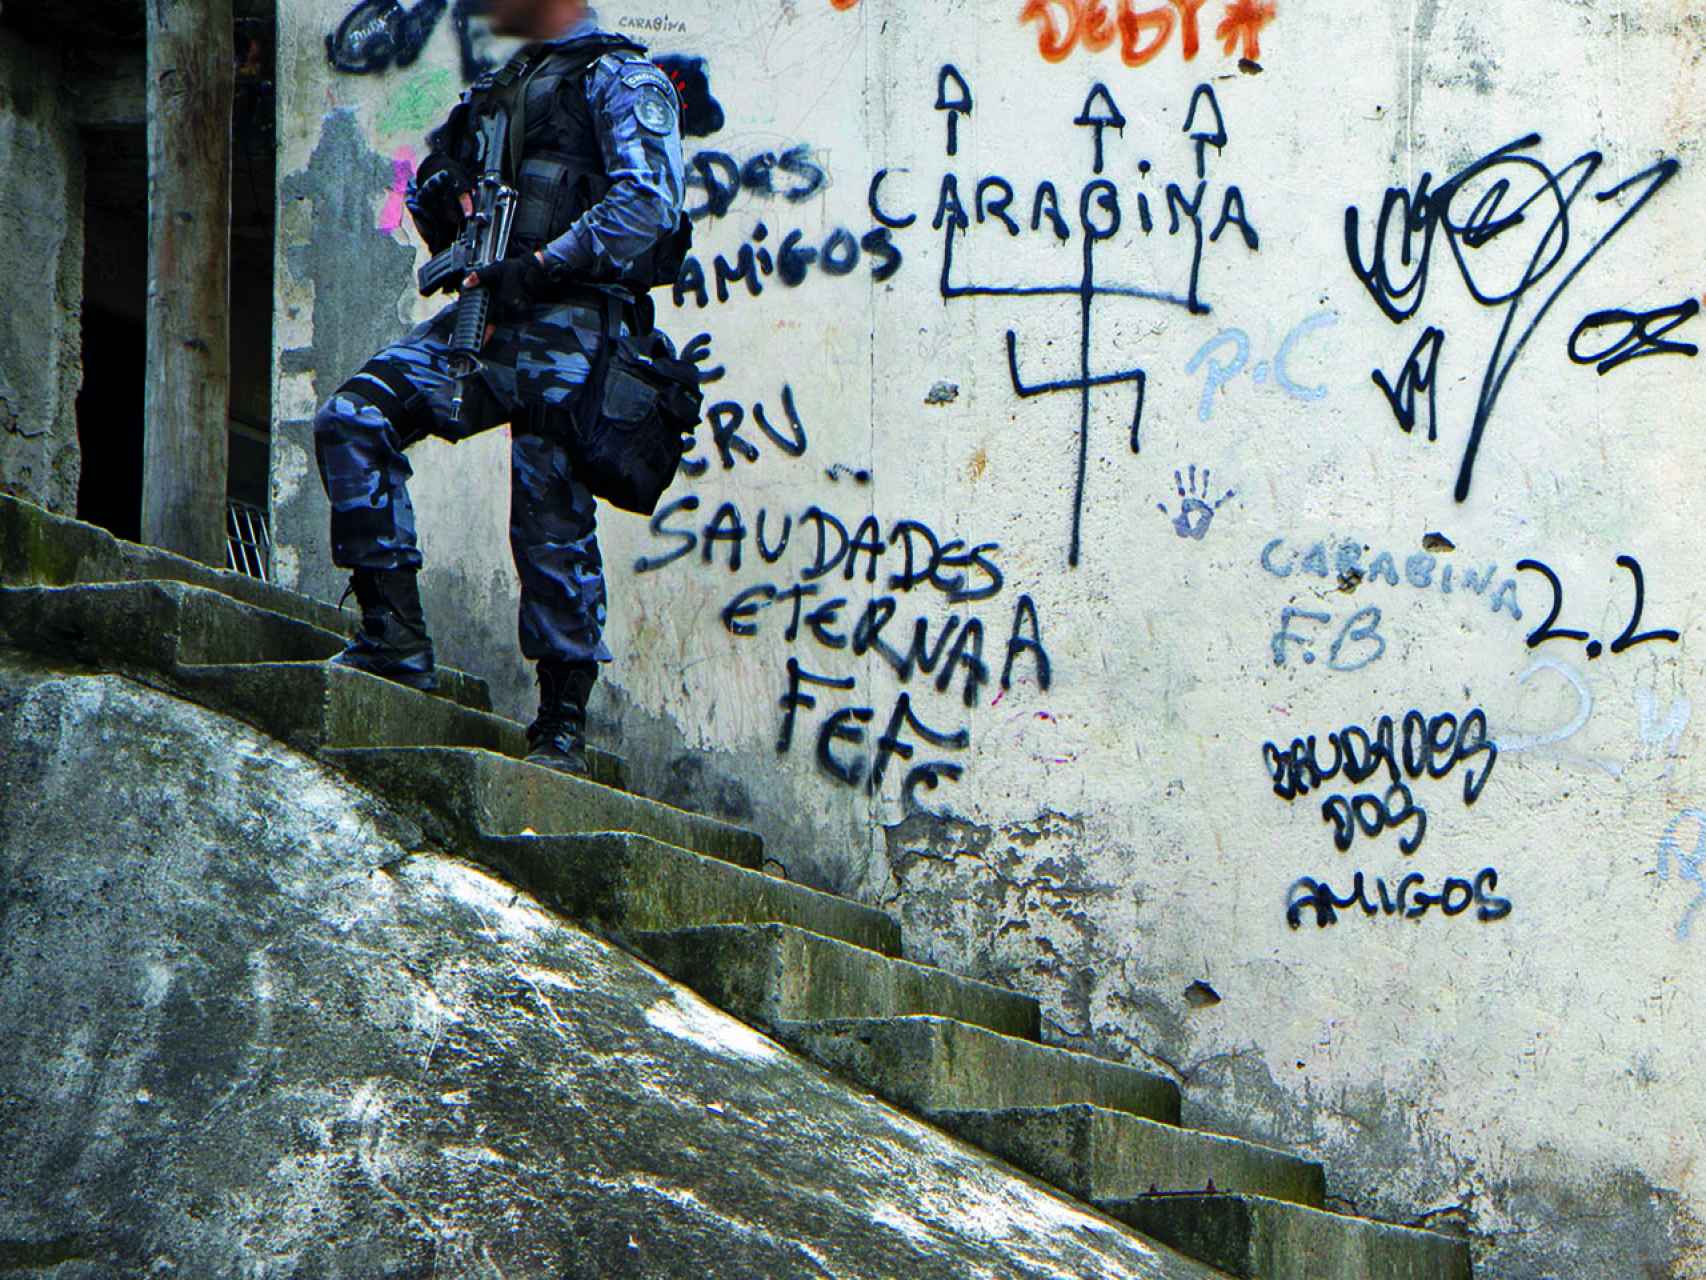 Río Ciudad Olímpica: La Policía Militar quita el sueño